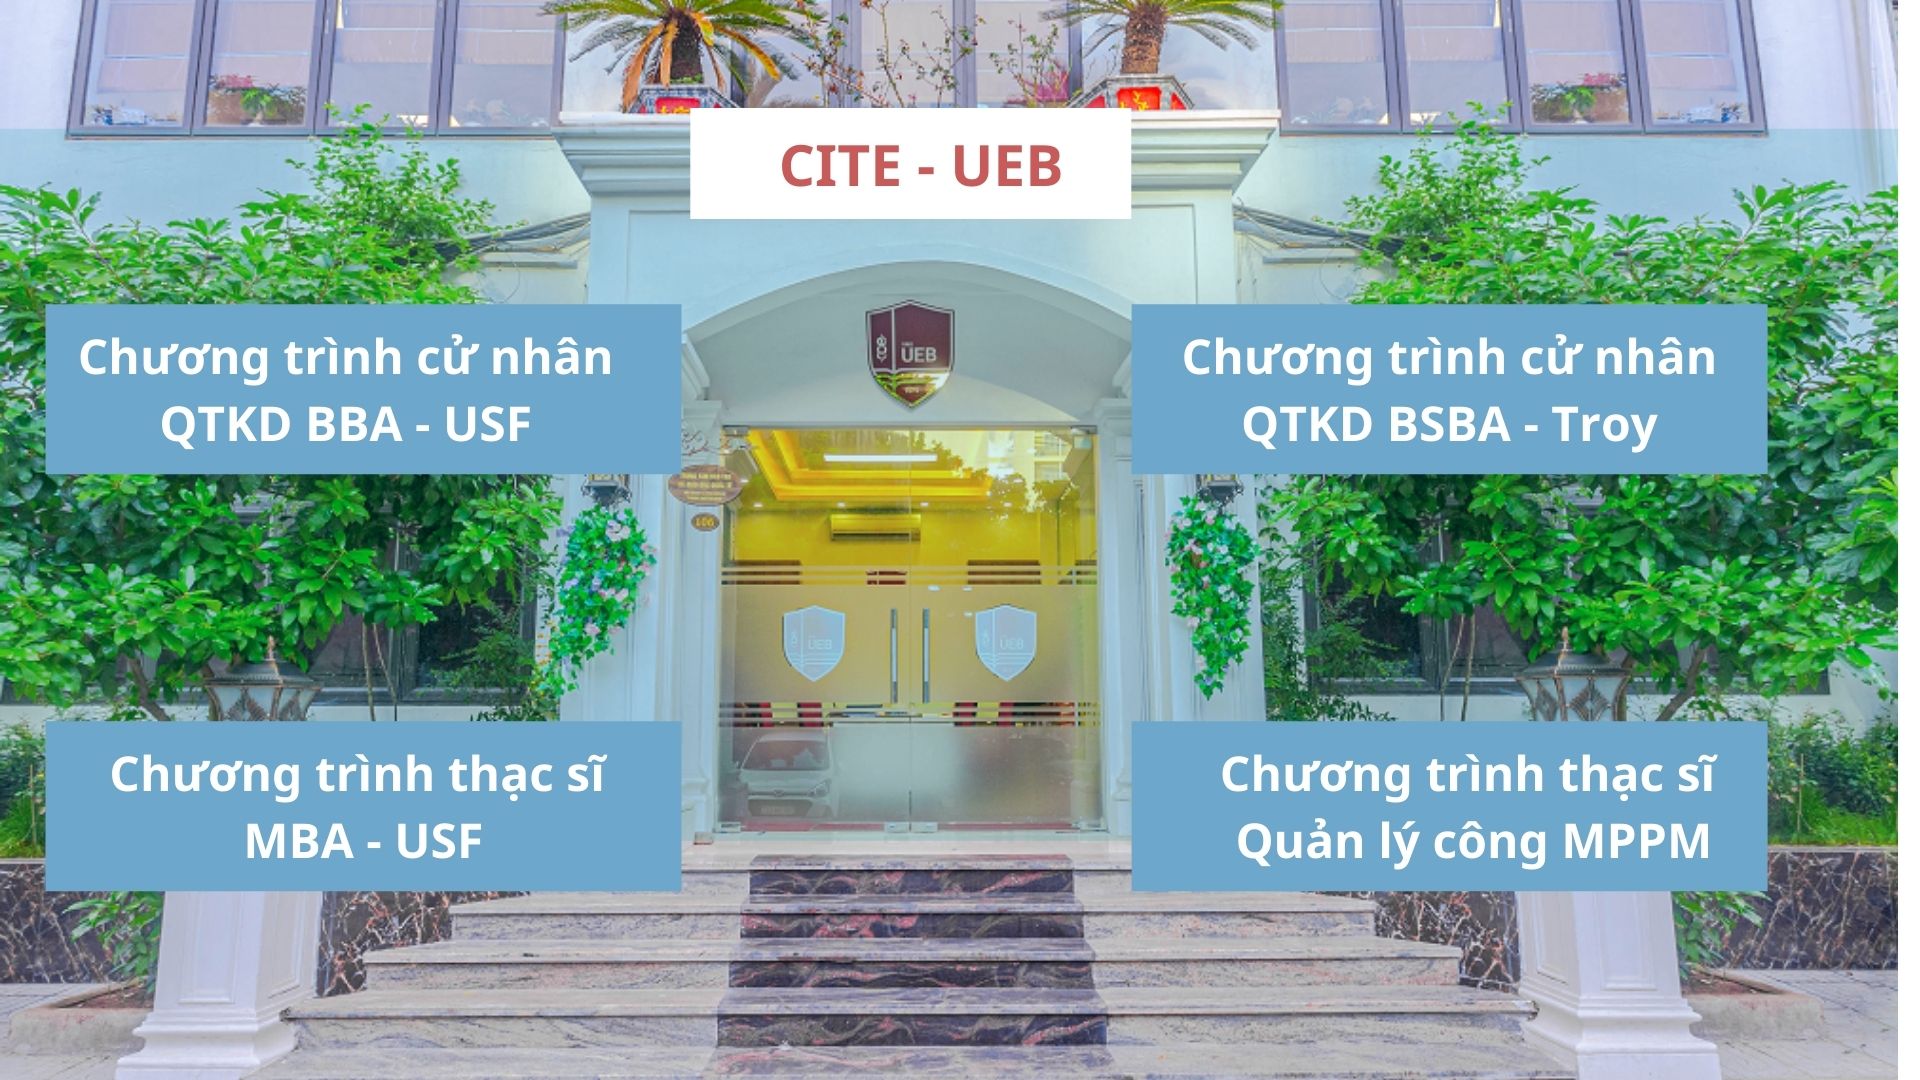 Trung tâm Đào tạo và Giáo dục Quốc tế CITE-UEB: Môi trường học tập và nghiên cứu đẳng cấp hàng đầu